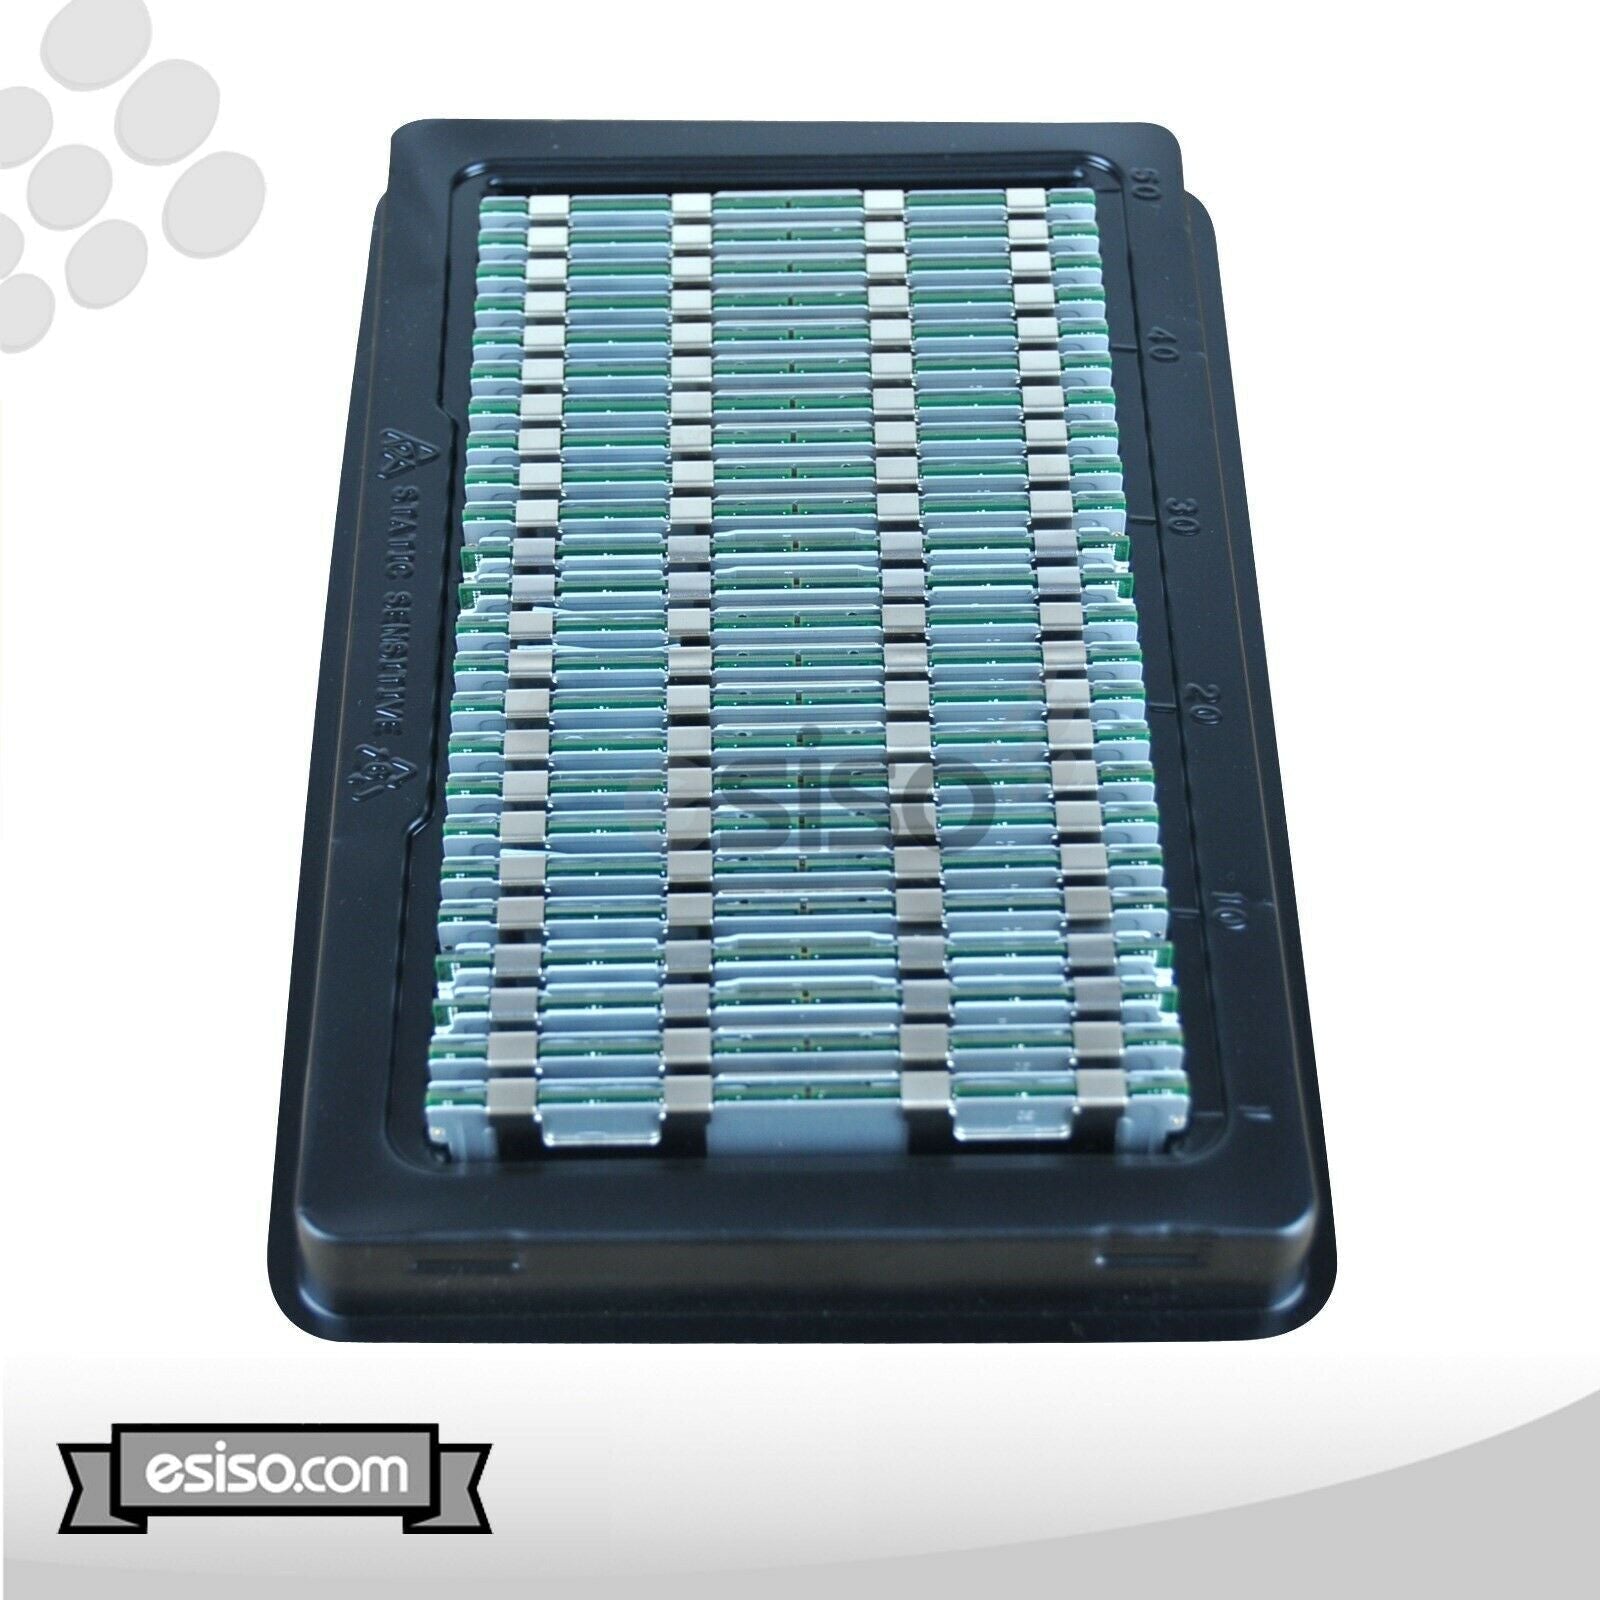 192GB (12x 16GB) 10600R RAM MEMORY MODULE FOR HP DL180 DL360 DL380 DL580 G6 G7